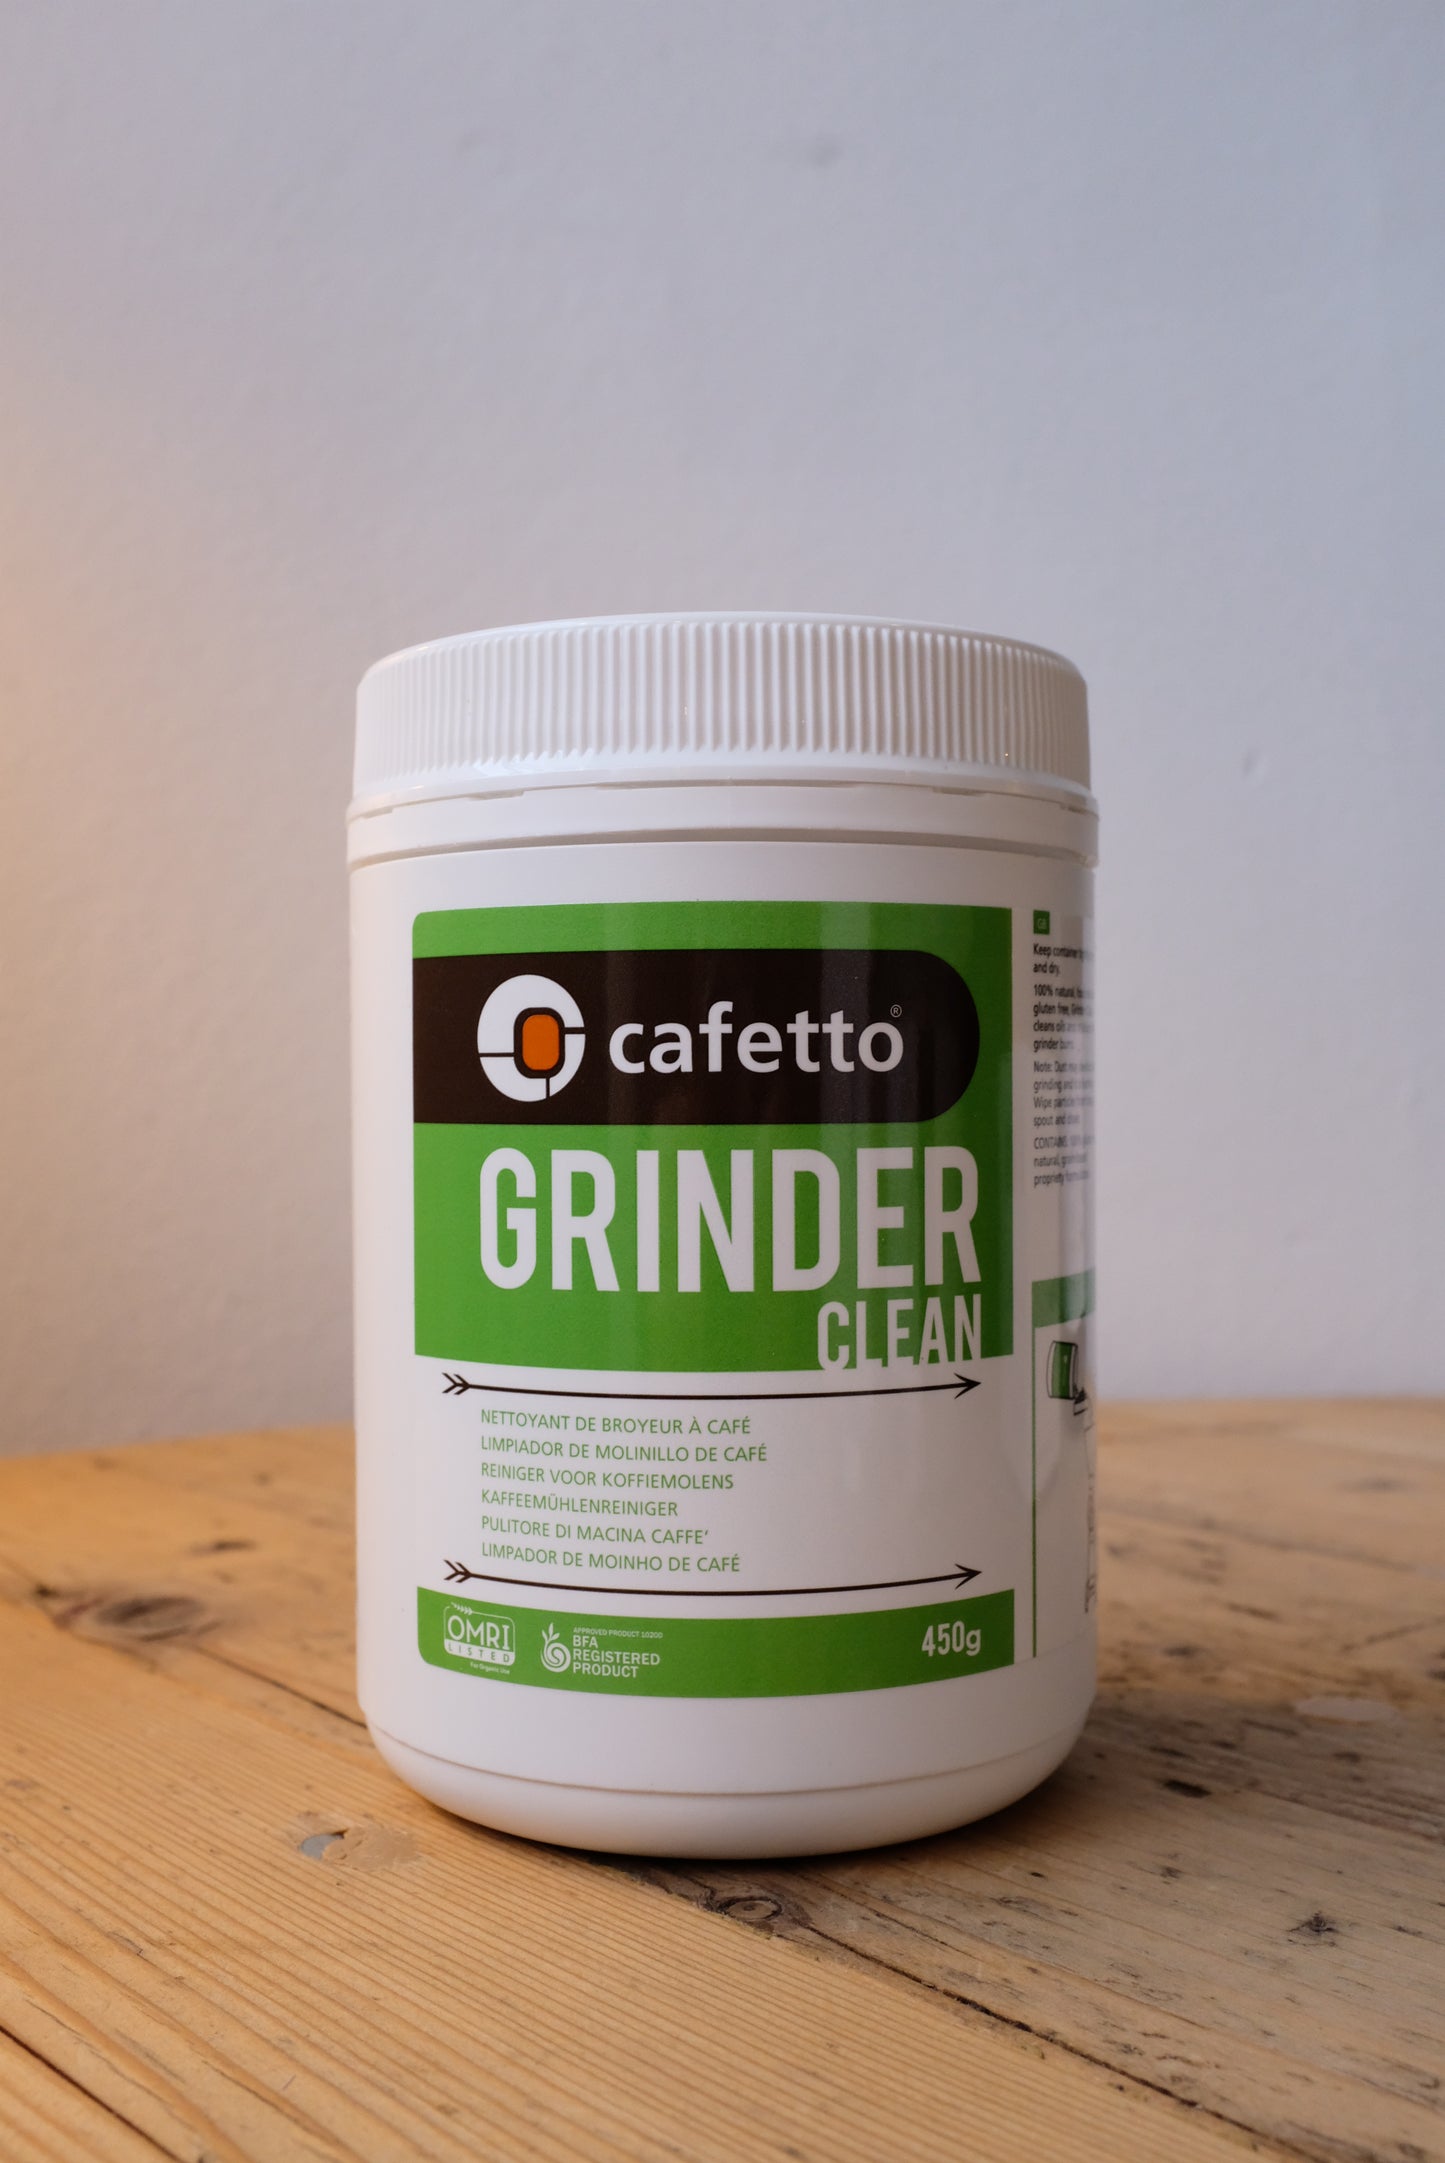 Cafetto Grinder Clean Kaffeemühlenreiniger 450g